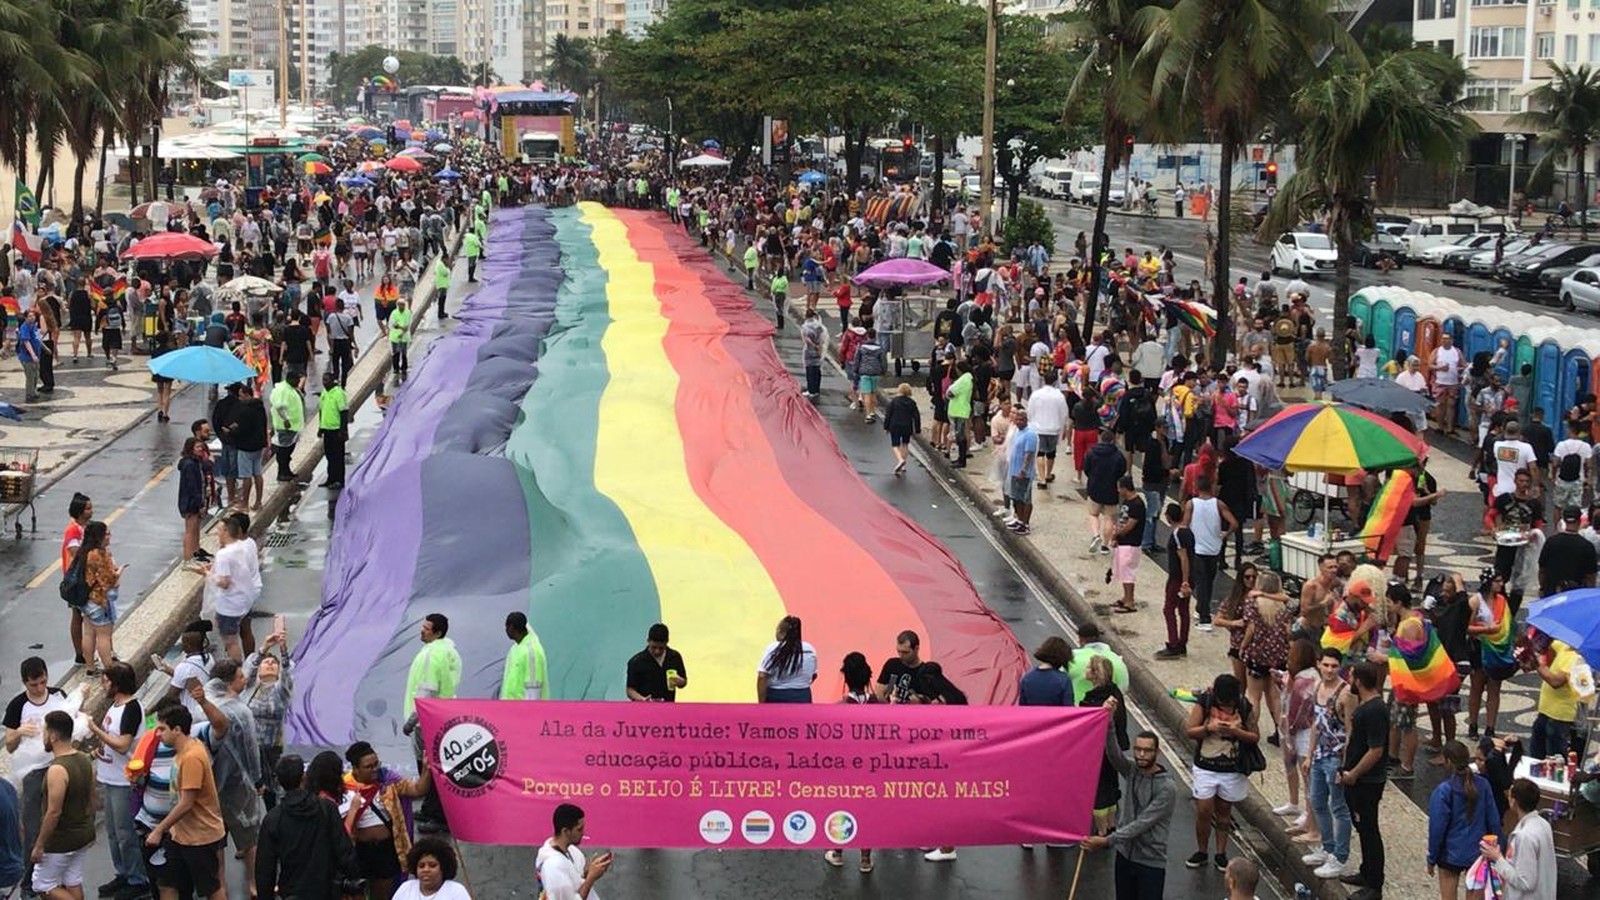 Copacabana hosts the 24th LGBT Pride Parade in Rio de Janeiro.